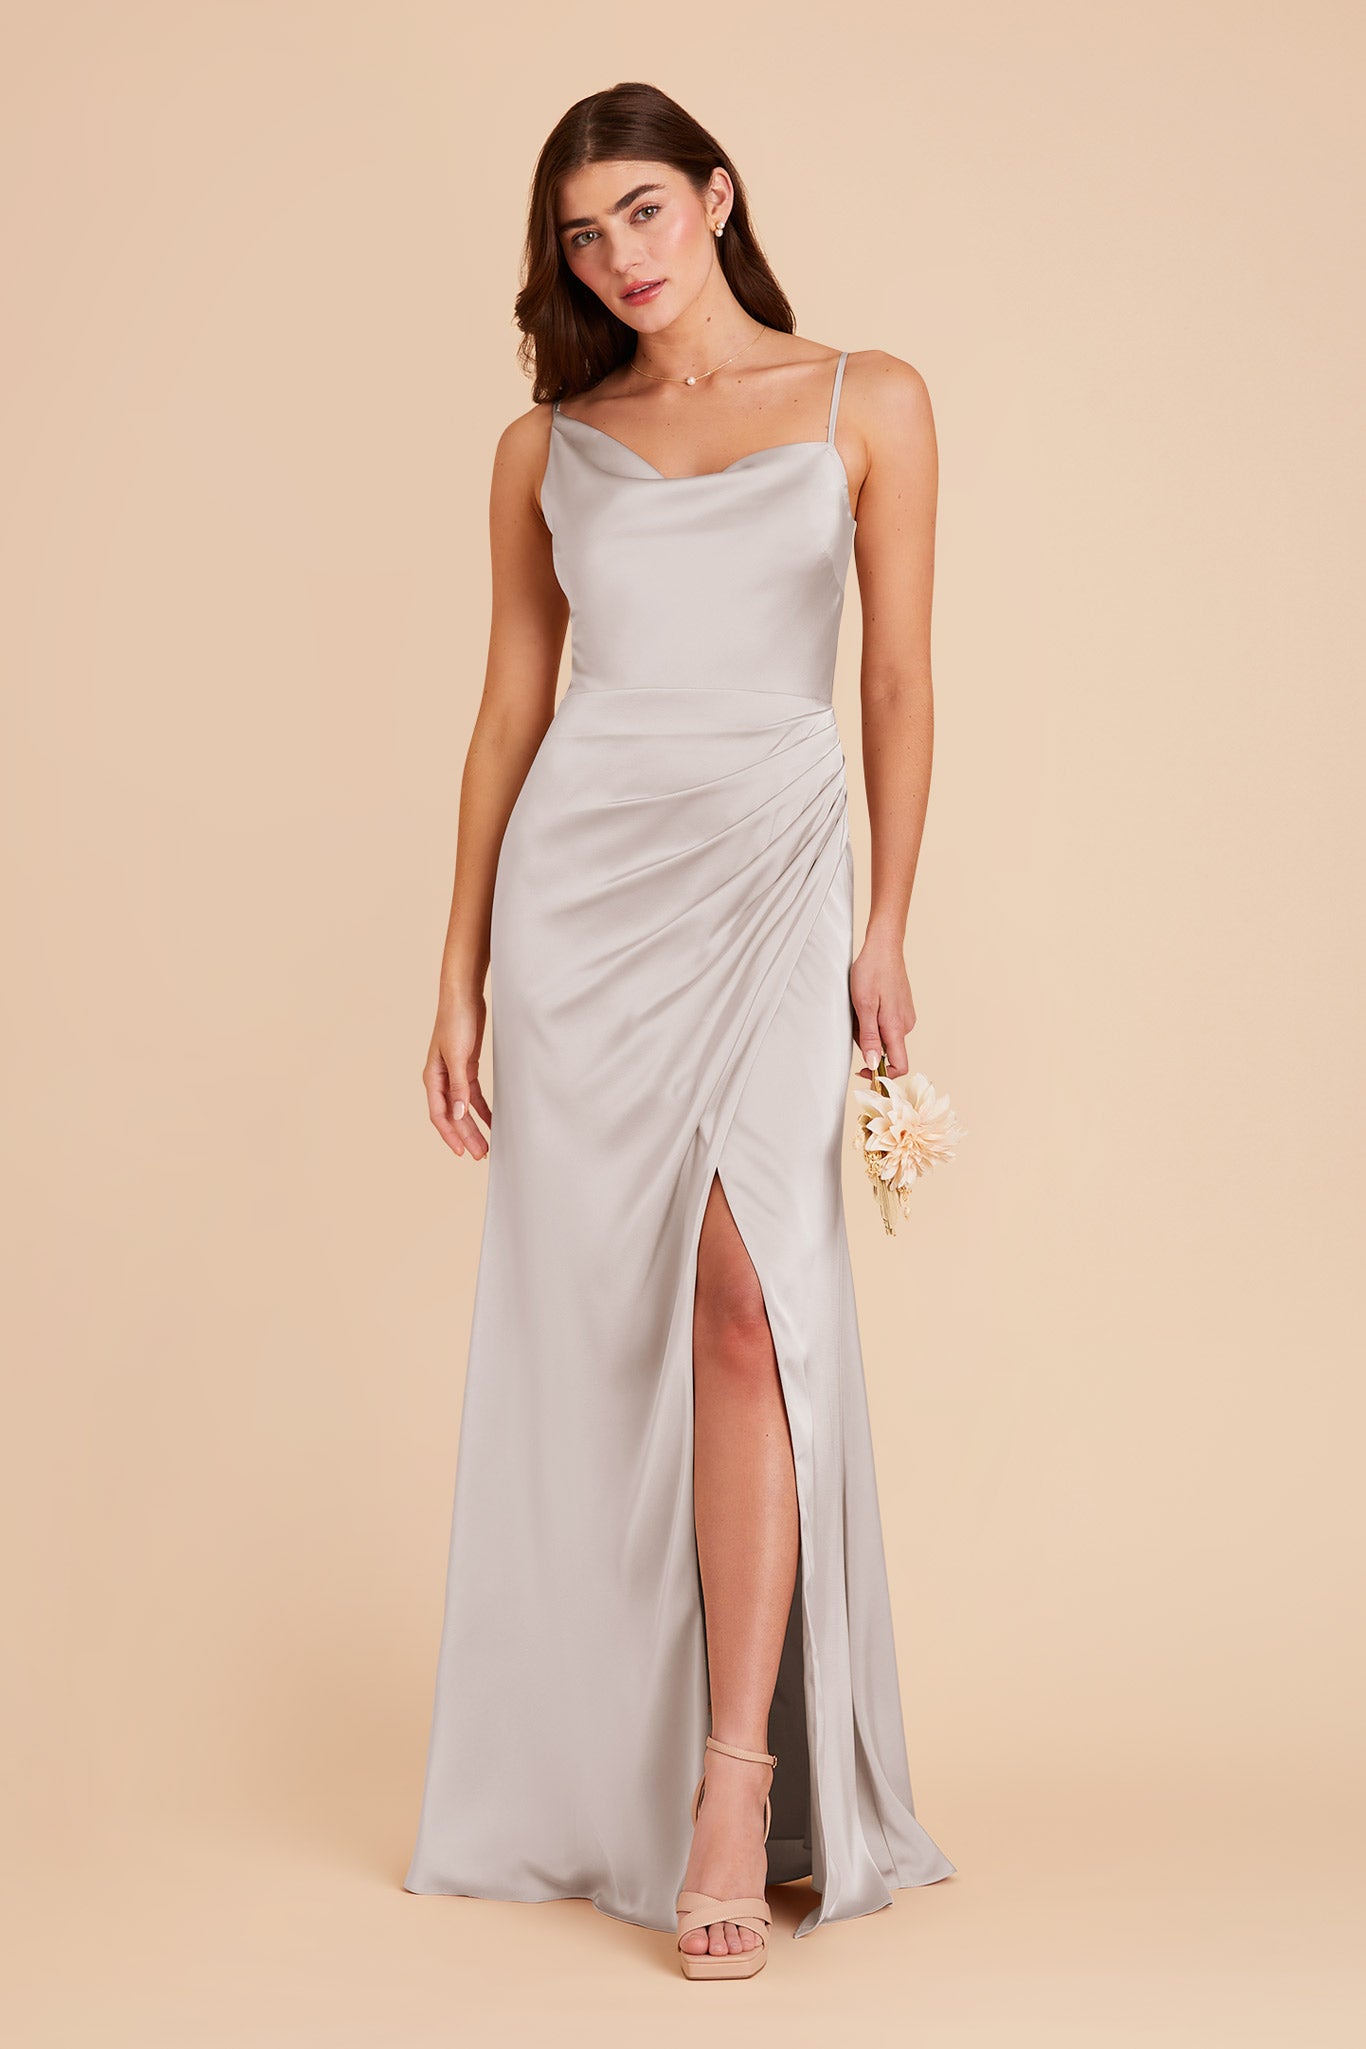 Platinum Jennifer Matte Satin Dress by Birdy Grey